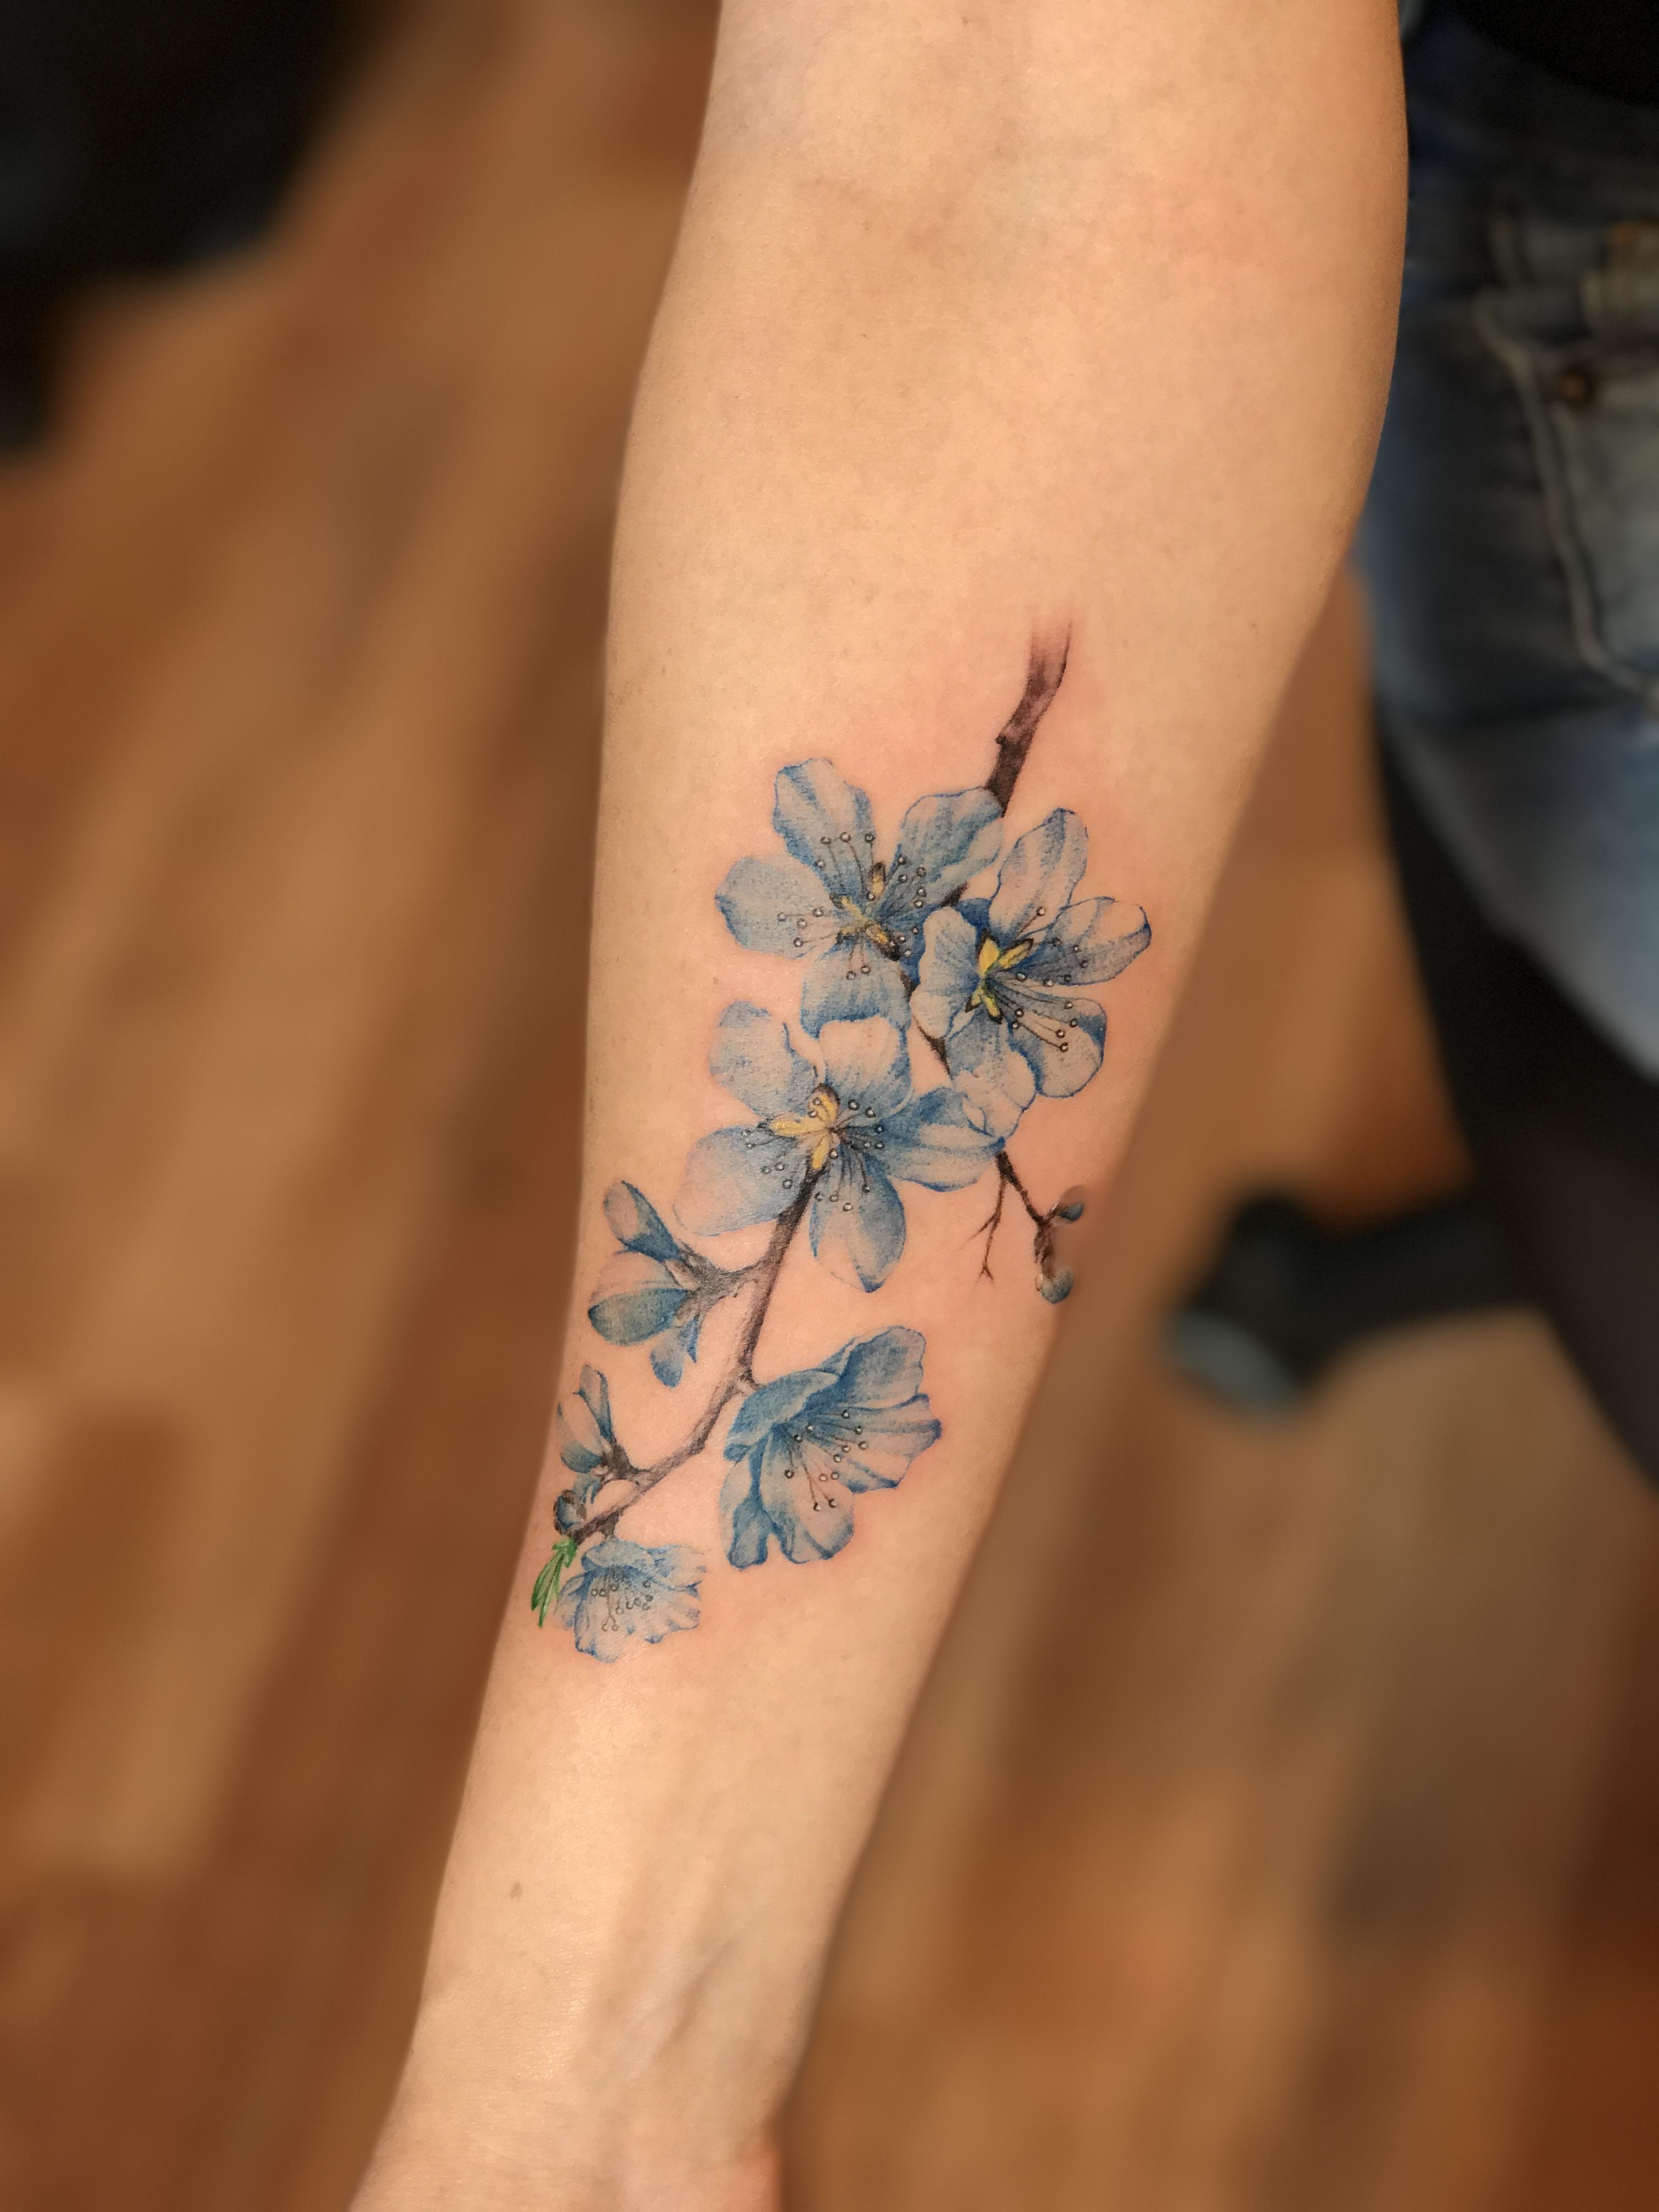 cuáles son los elementos típicos para los tatuajes japoneses, ideas de tatuajes para mujeres únicos con flores en mas de 80 imagines 